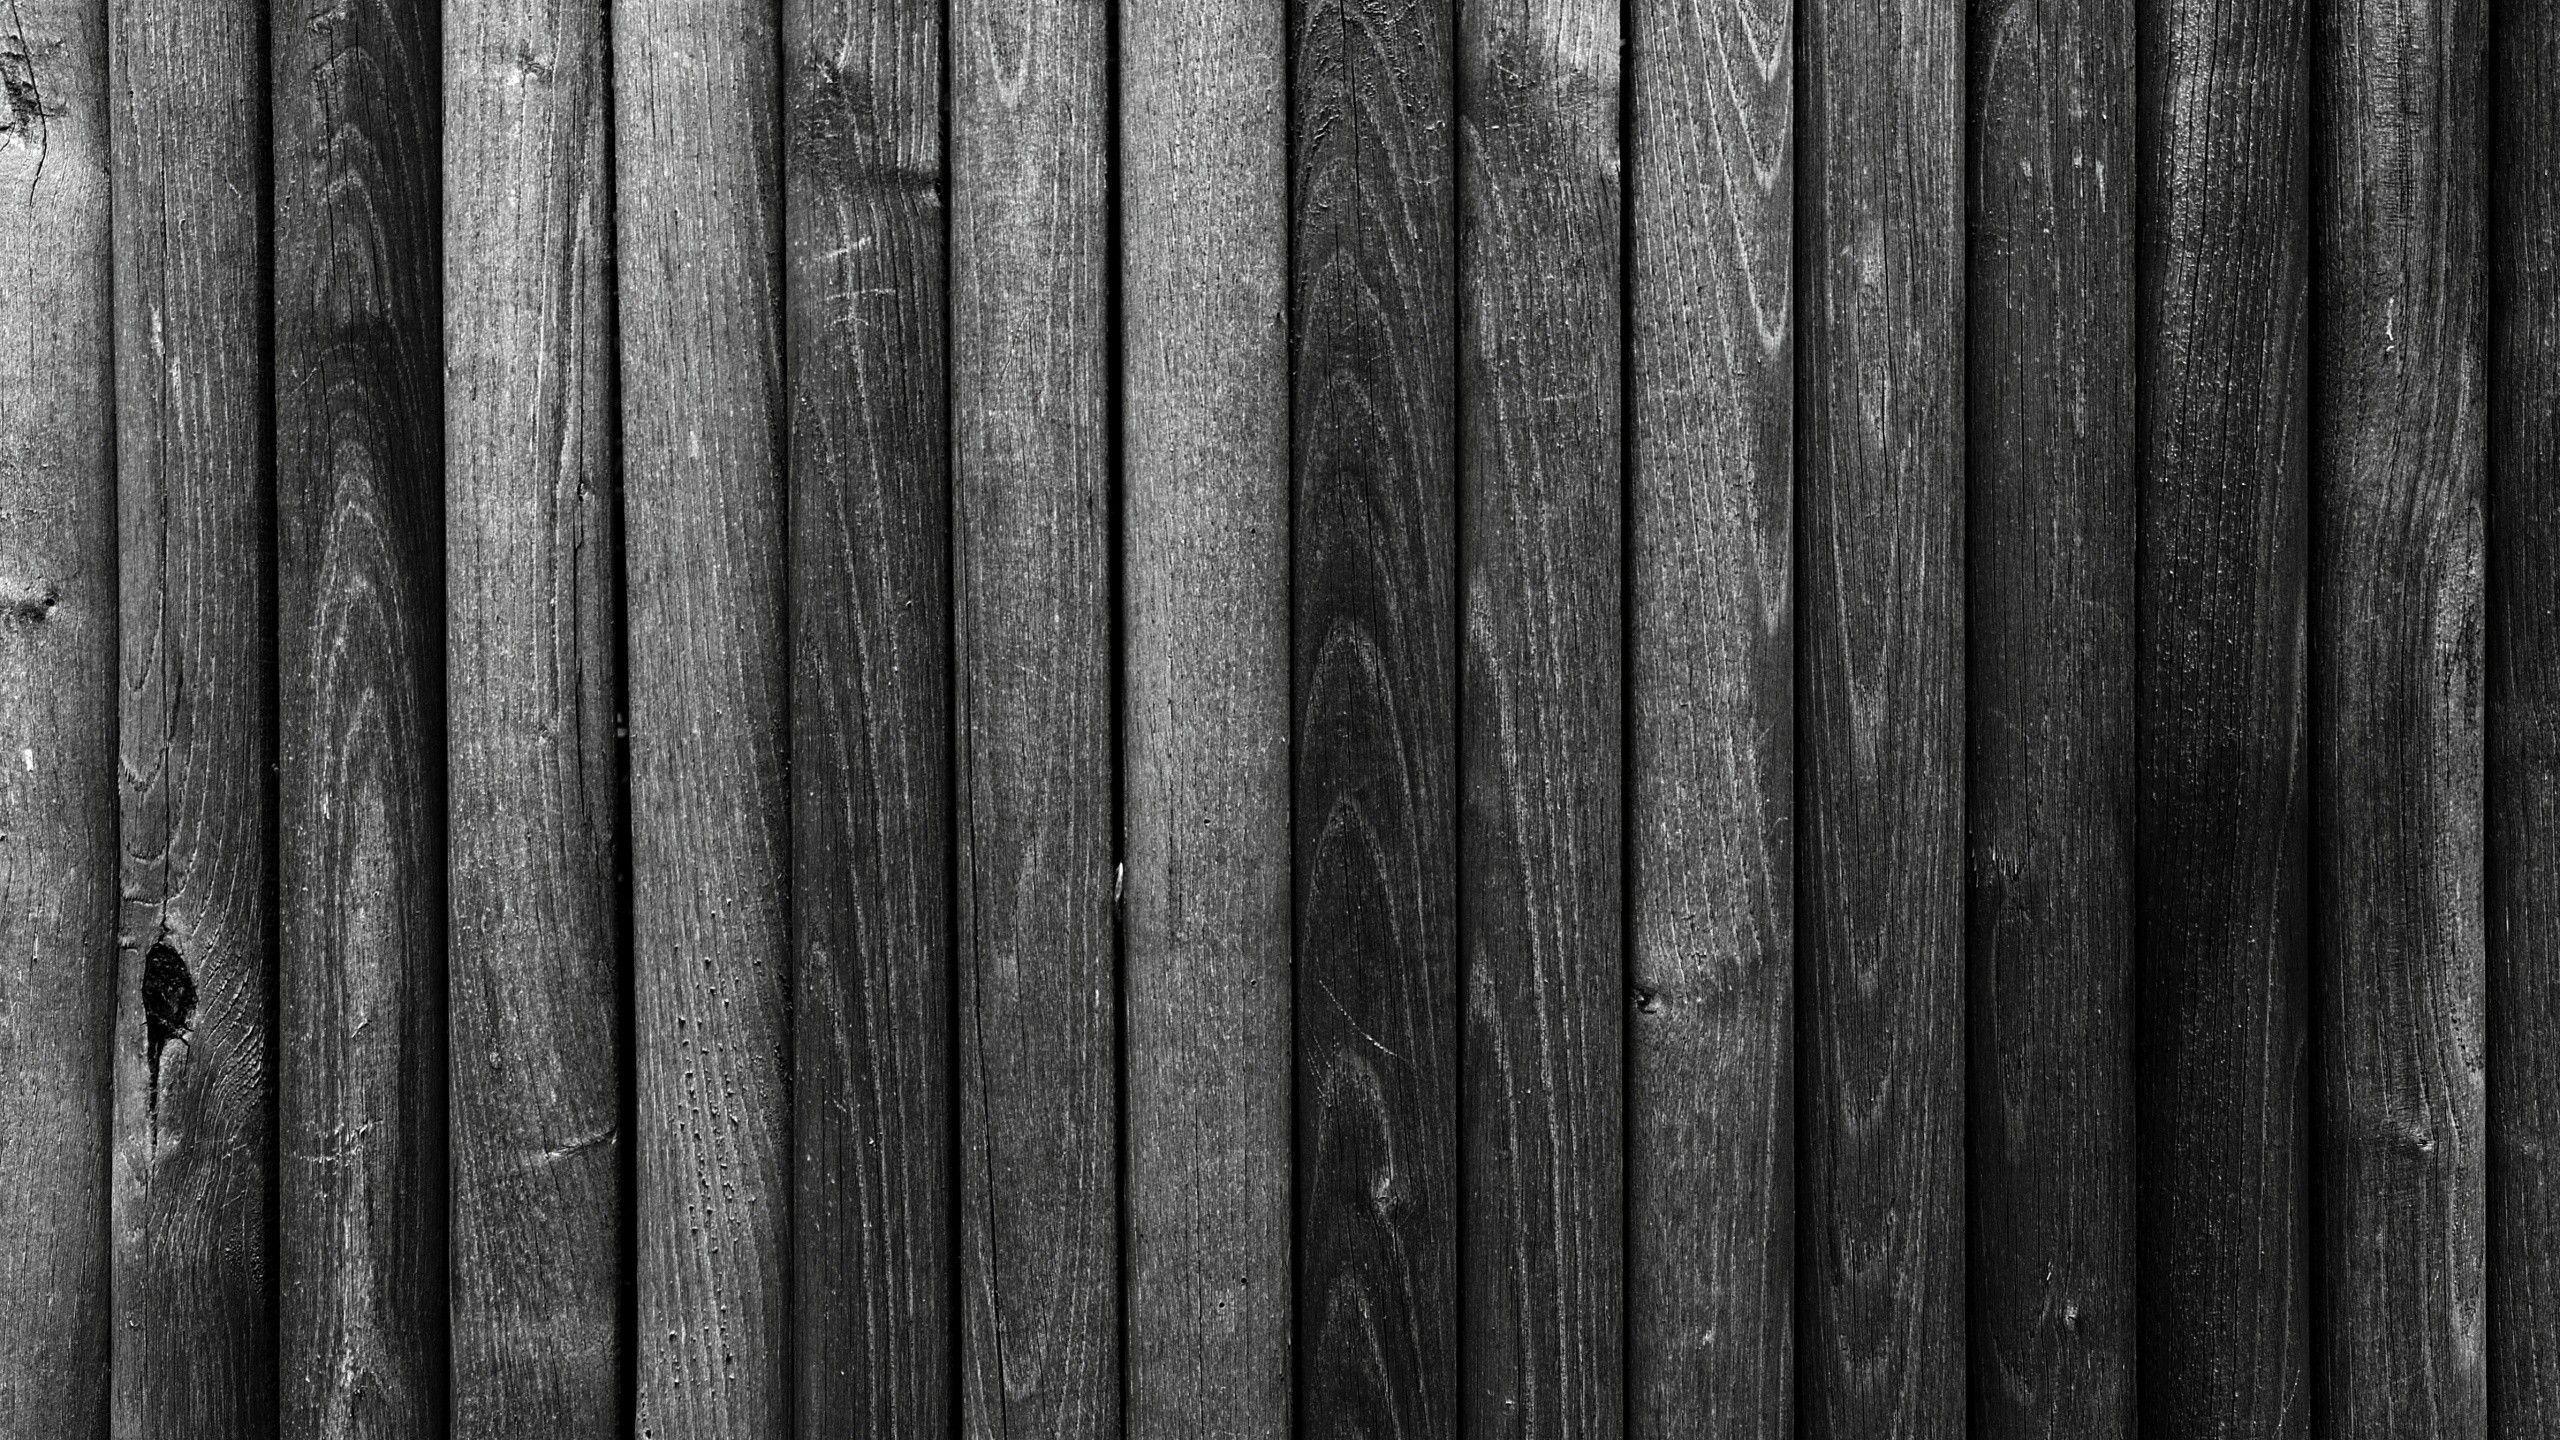 Hình nền gỗ đen phổ biến nhất: Hình nền gỗ đen là lựa chọn phổ biến nhất với mọi người, mang đến vẻ thẩm mỹ đầy tinh tế. Khám phá các hình nền gỗ của chúng tôi và tìm kiếm lựa chọn tốt nhất phù hợp với phong cách của bạn.